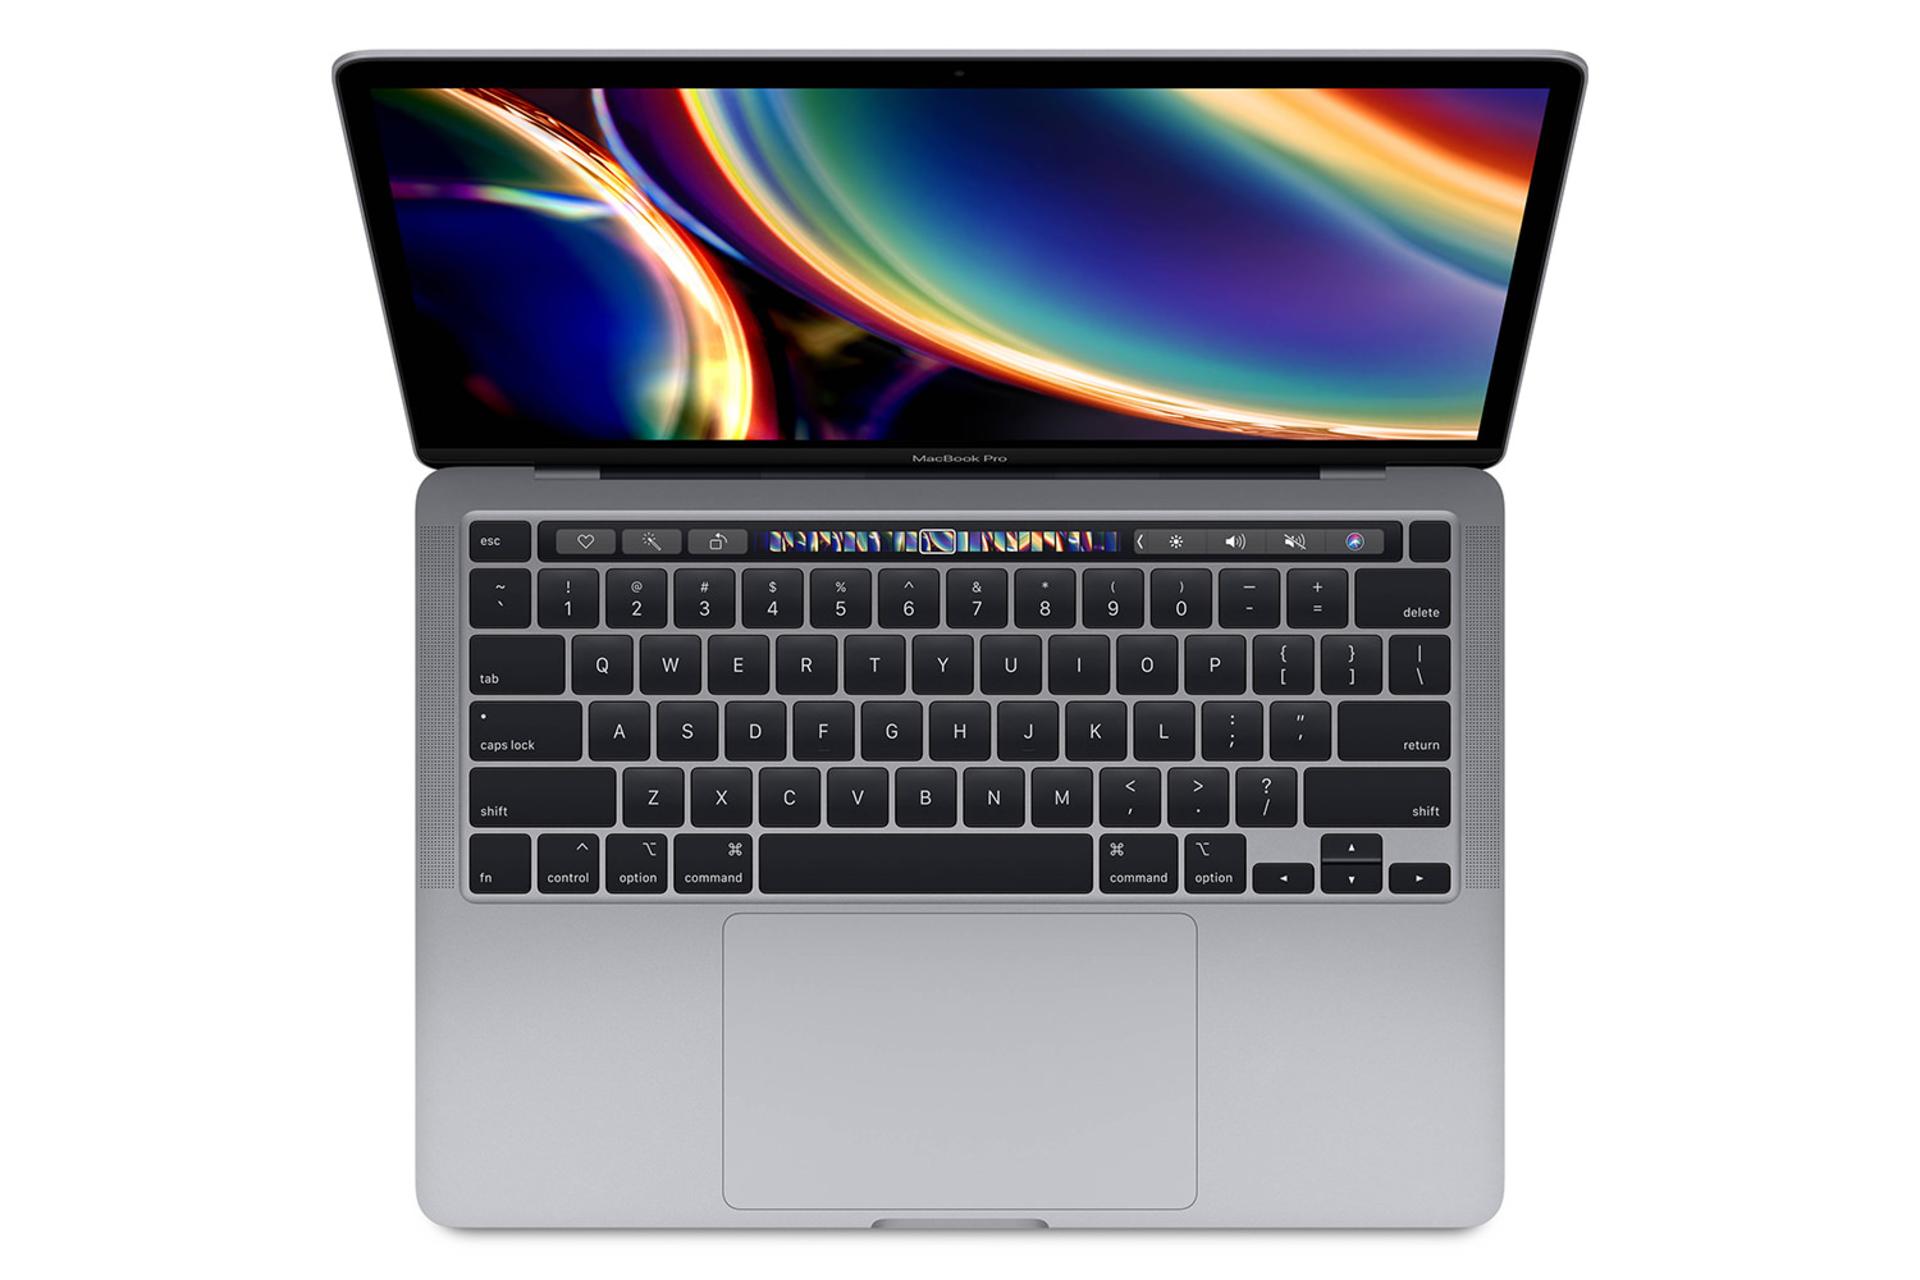 مک بوک پرو 13 اینچی 2020 اپل - صفحه نمایش و صفحه کلید / Apple Macbook Pro 13 2020